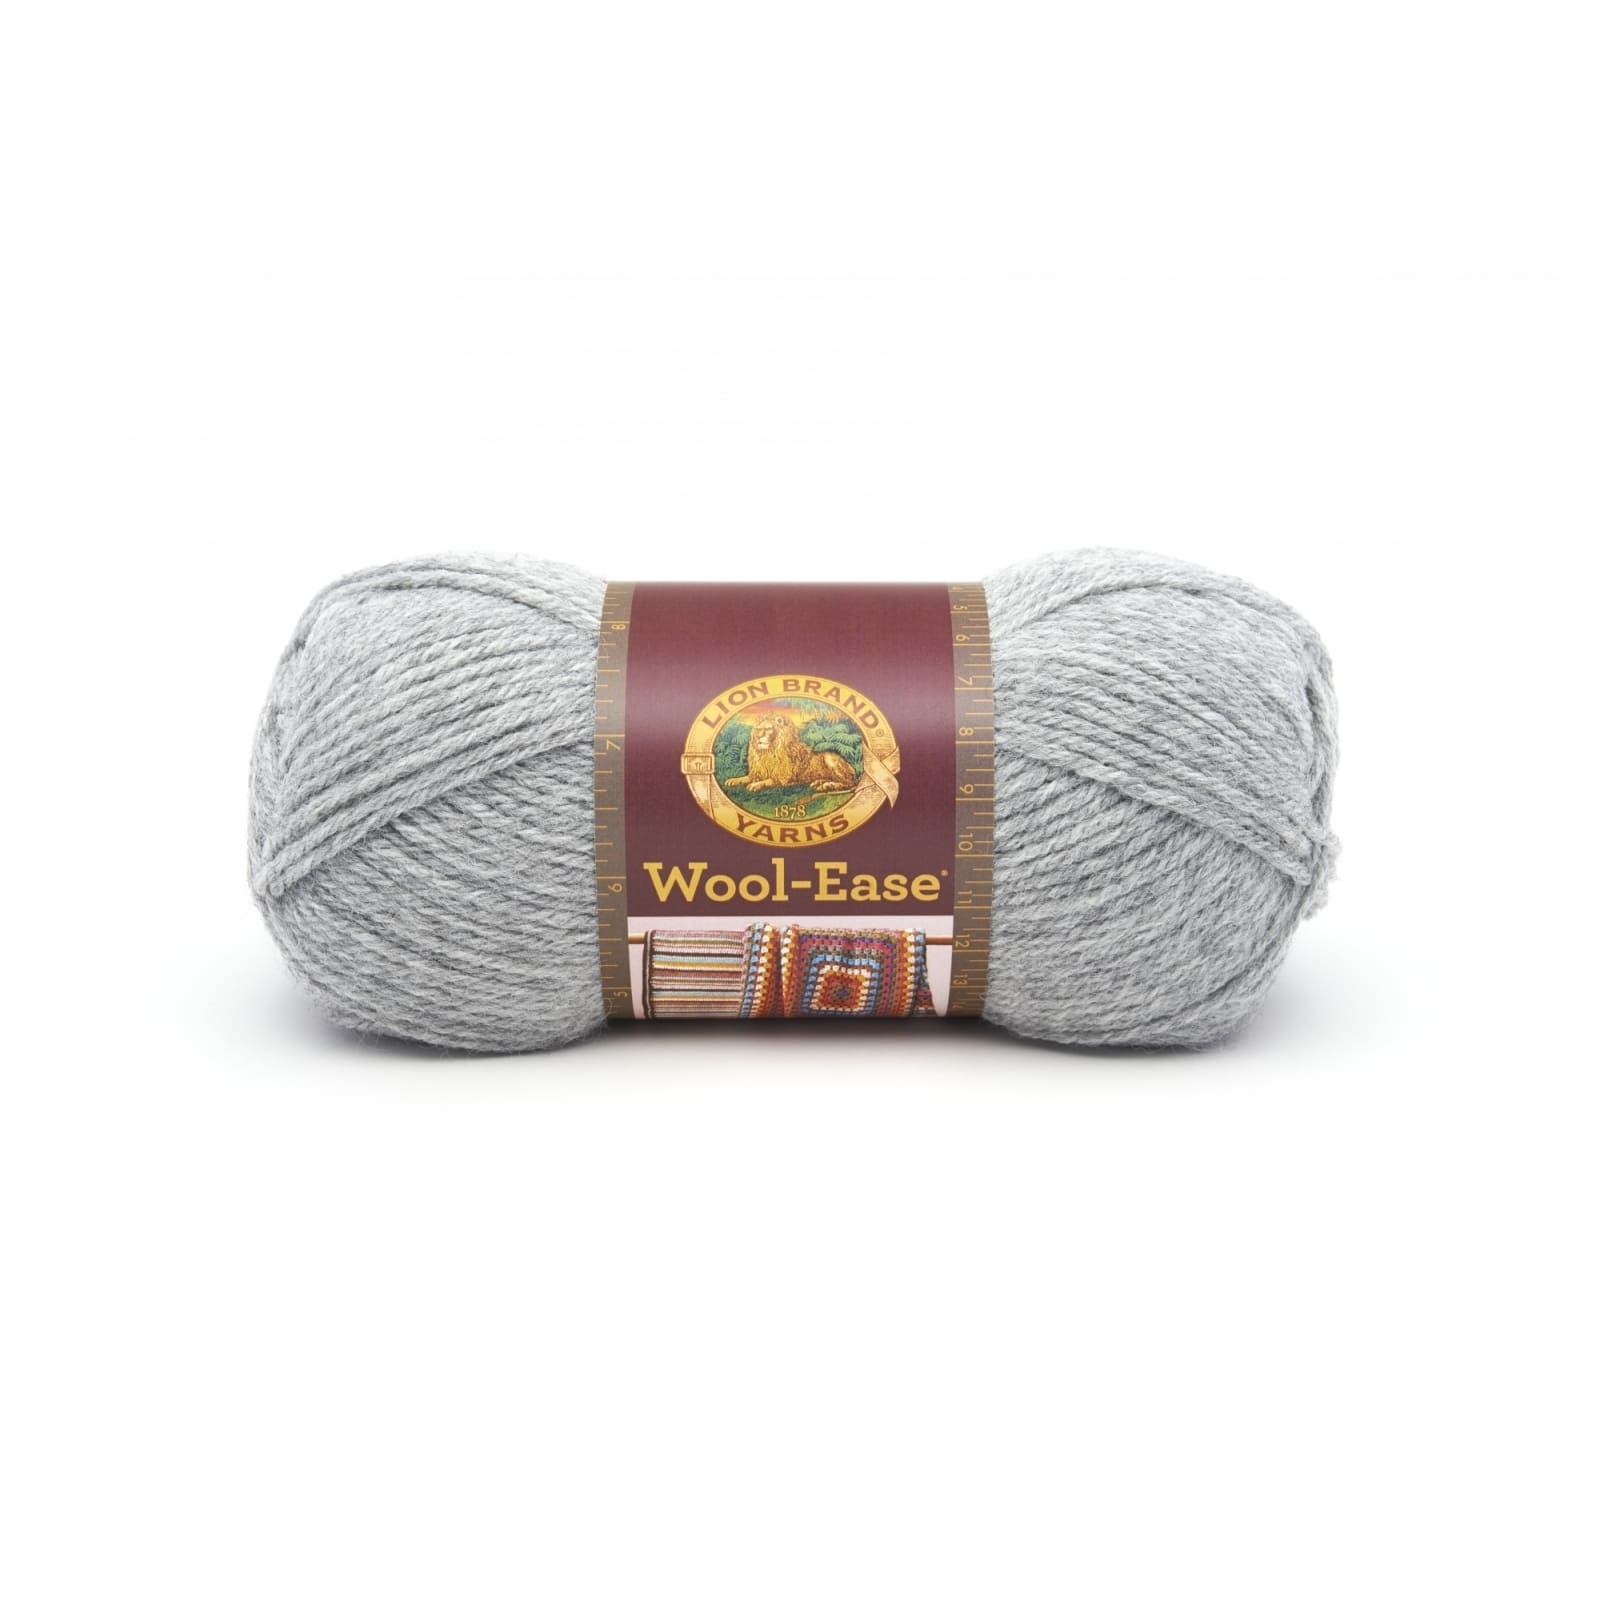 Lion Brand Wool Ease Yarn Oxford Grey